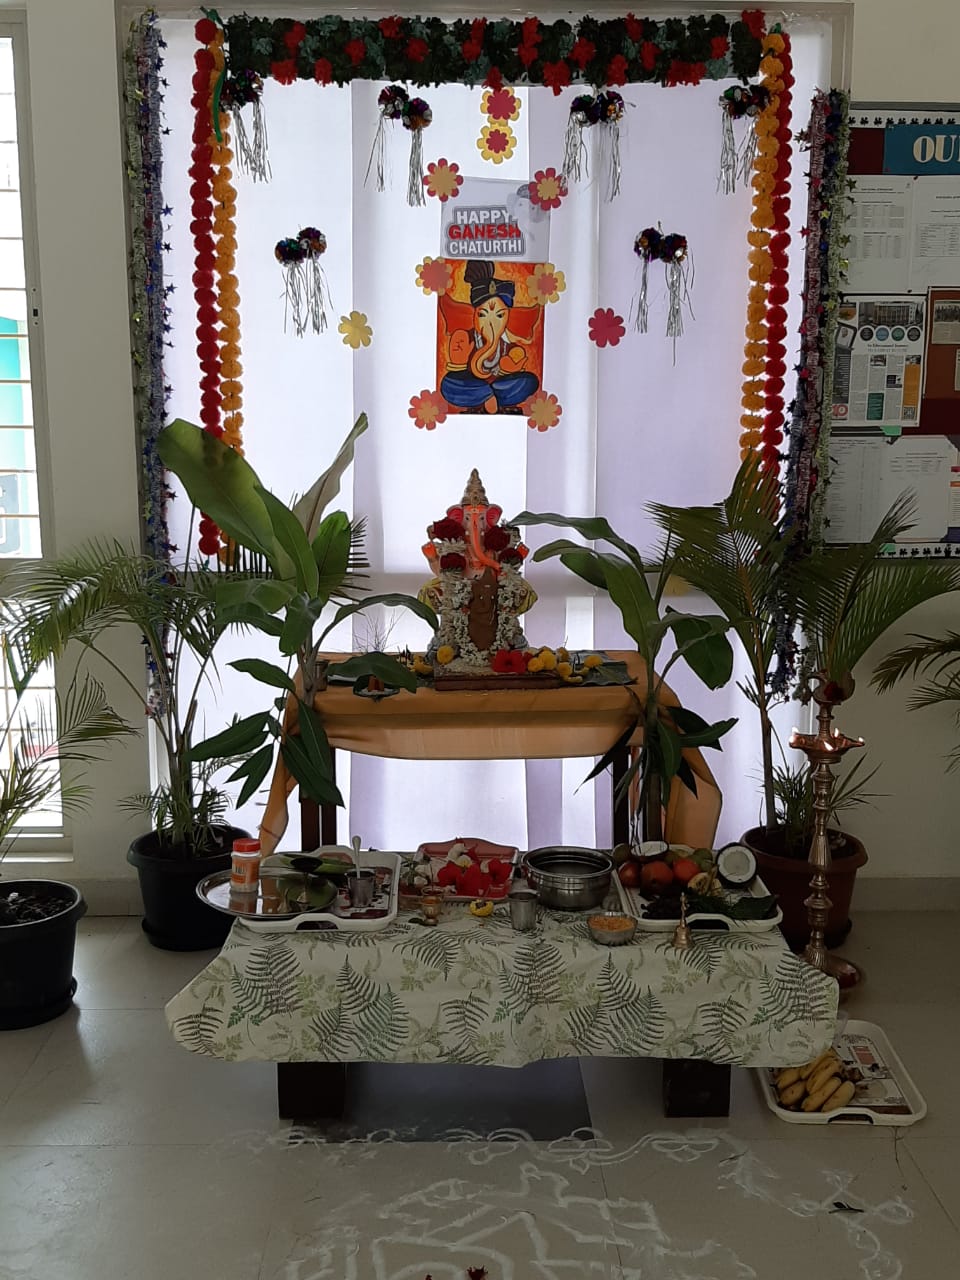 Ganesh Chaturthi CelebrationWhatsApp Image 2020-08-21 at 2.46.17 PM.jpeg